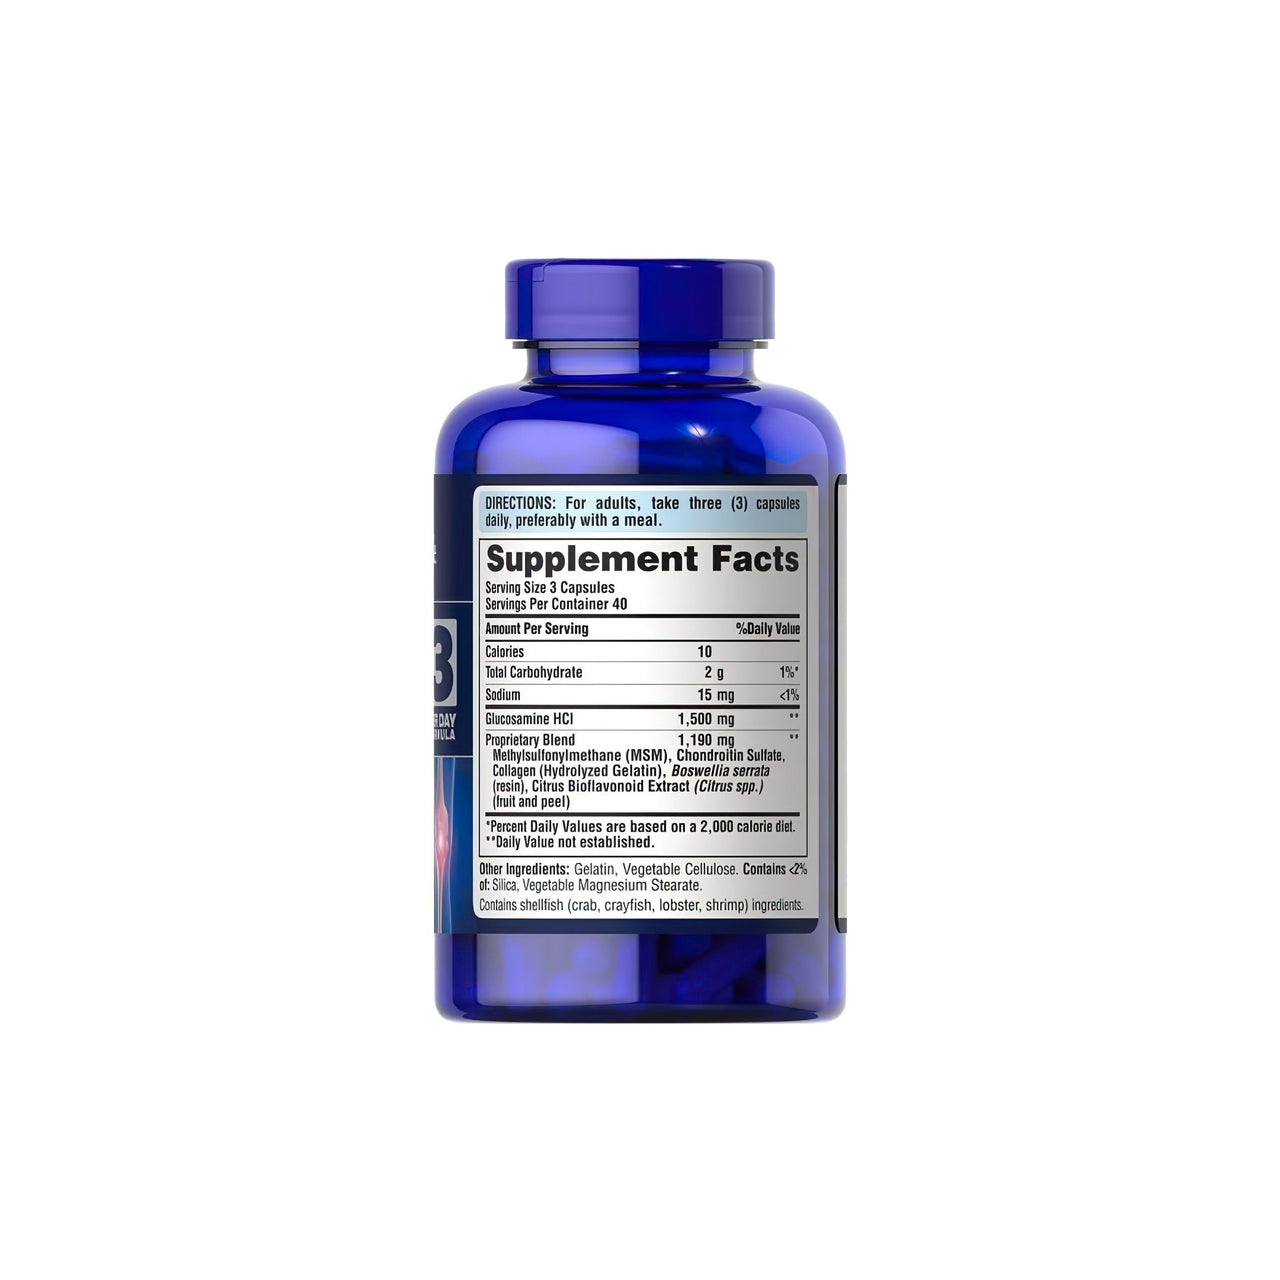 Un frasco de Puritan's Pride Glucosamina Condroitina MSM 120 cápsulas con etiqueta.